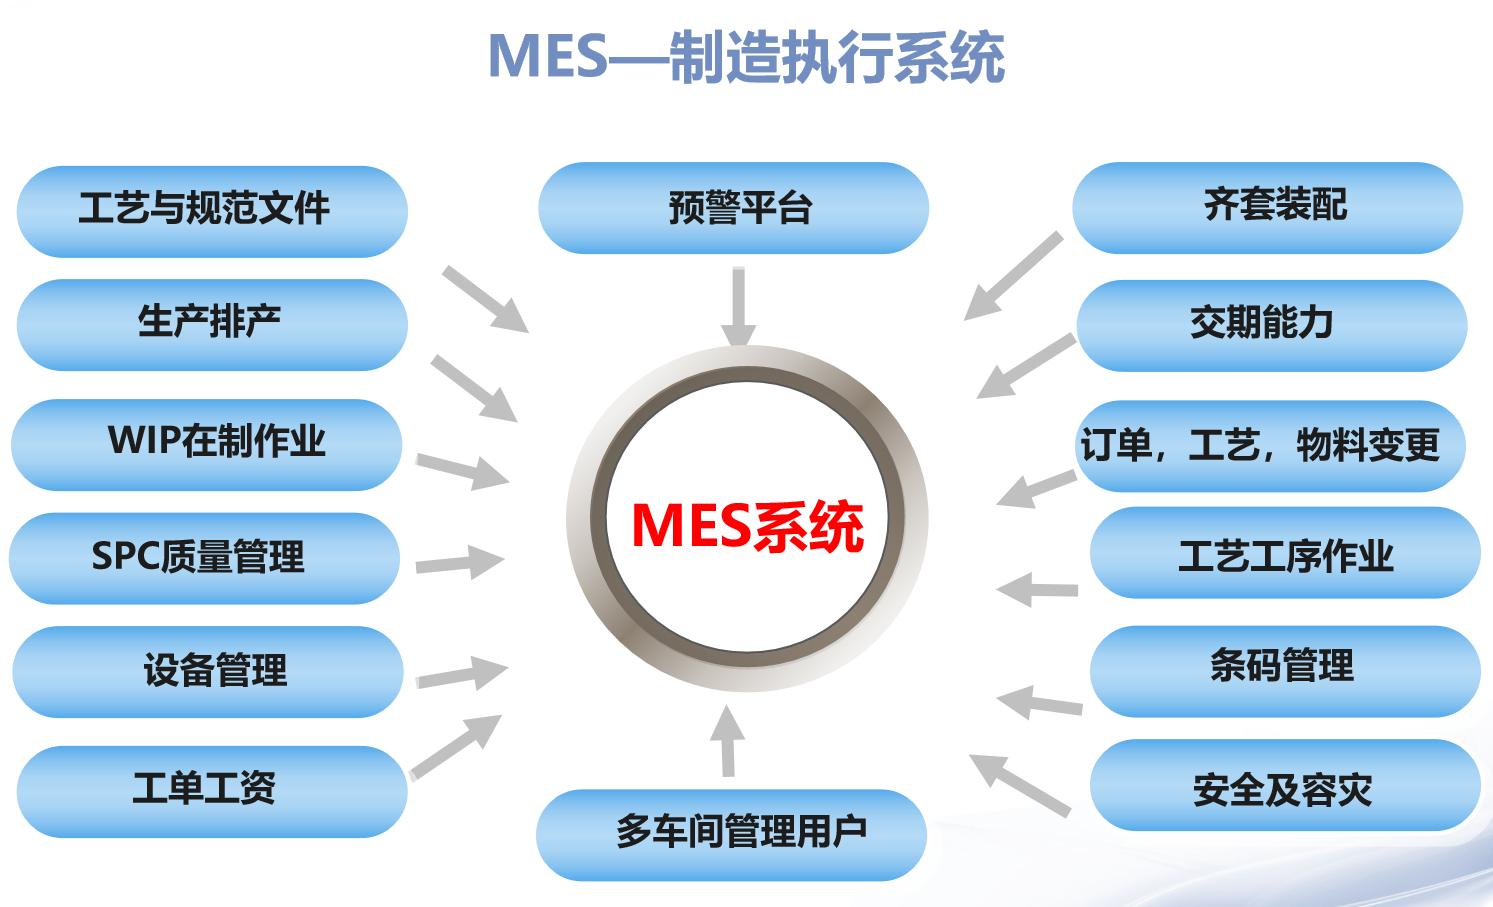 生产信息化管理系统MES如何才能满足中小型制造企业的需求 